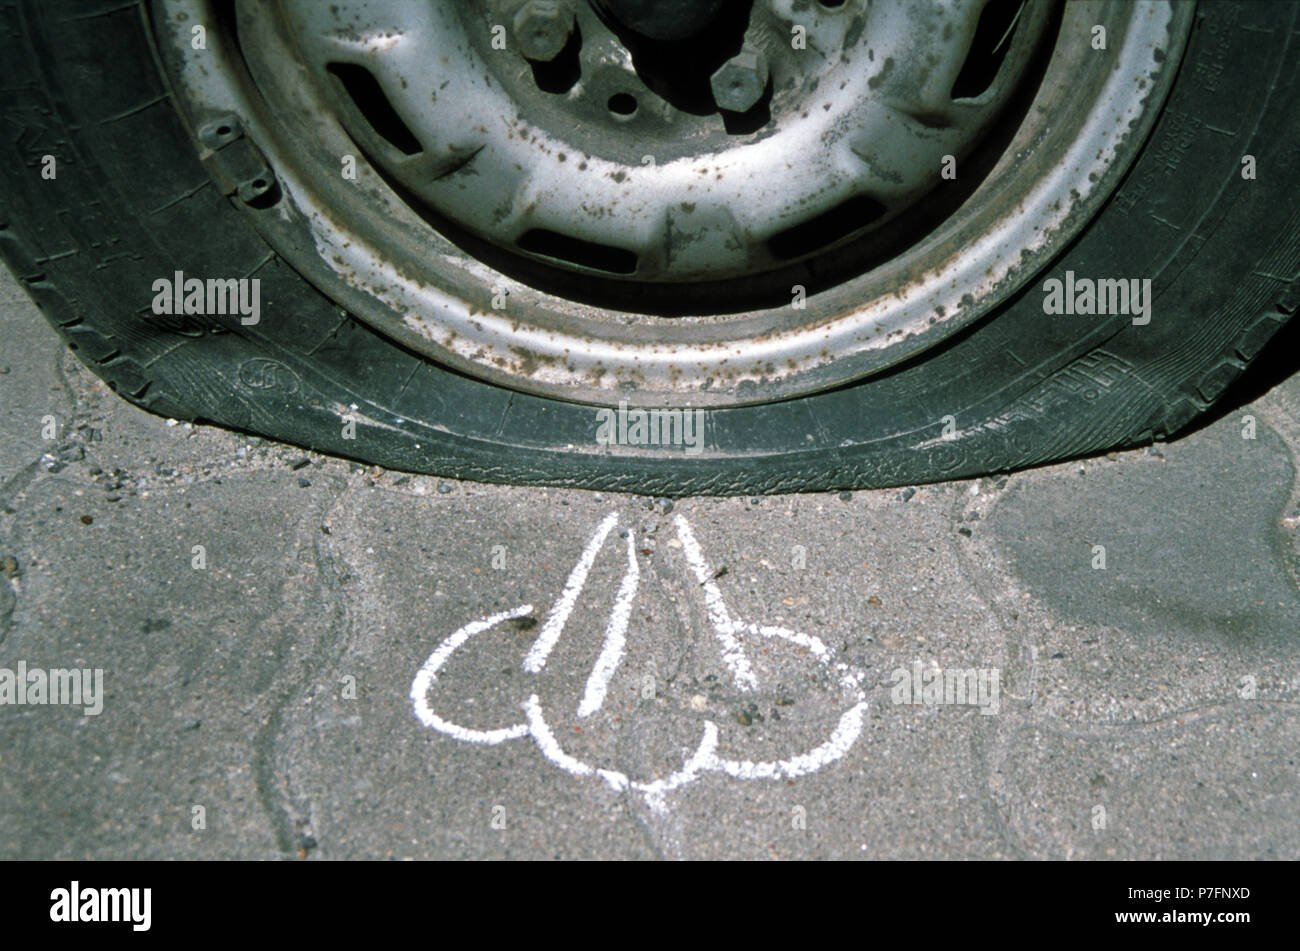 Kreidezeichnung, entweicht die Luft aus dem Reifen, Berlin, Deutschland  Stockfotografie - Alamy